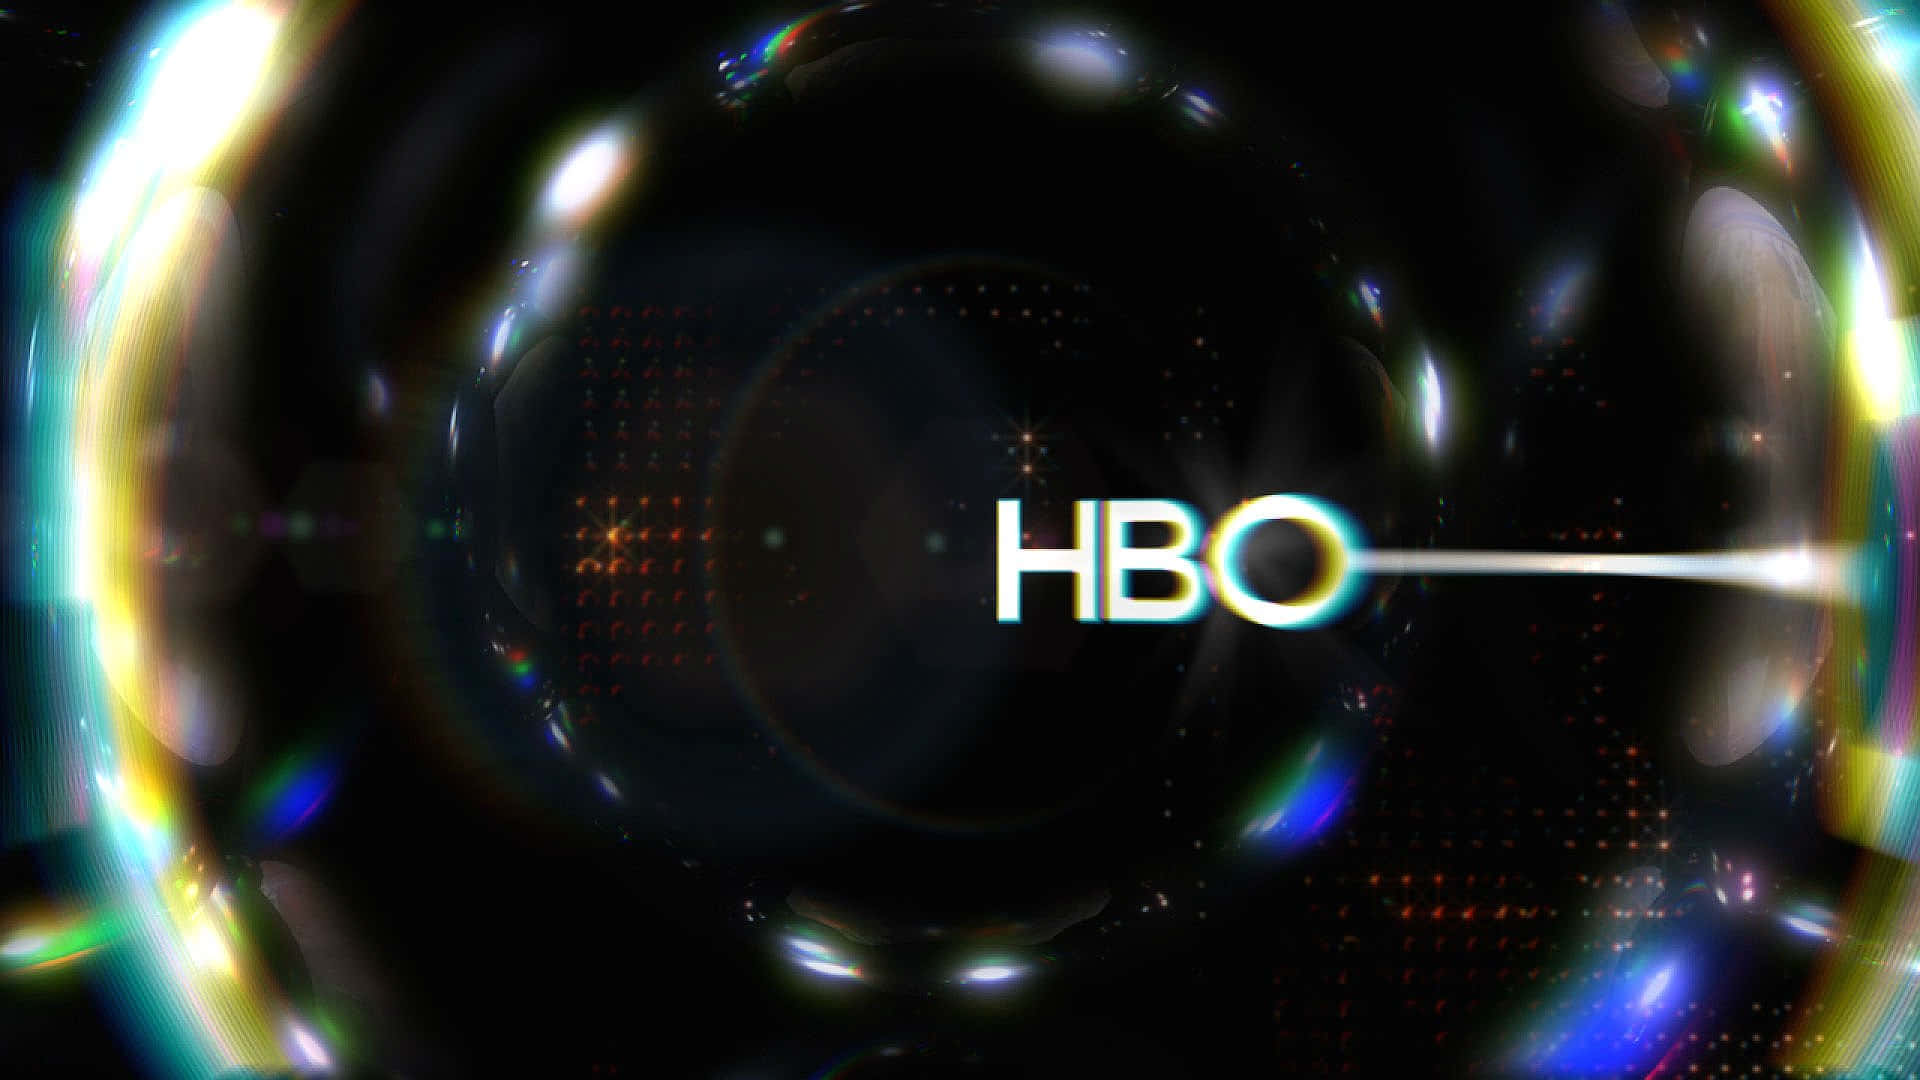 Hbo Logo In A Dark Background